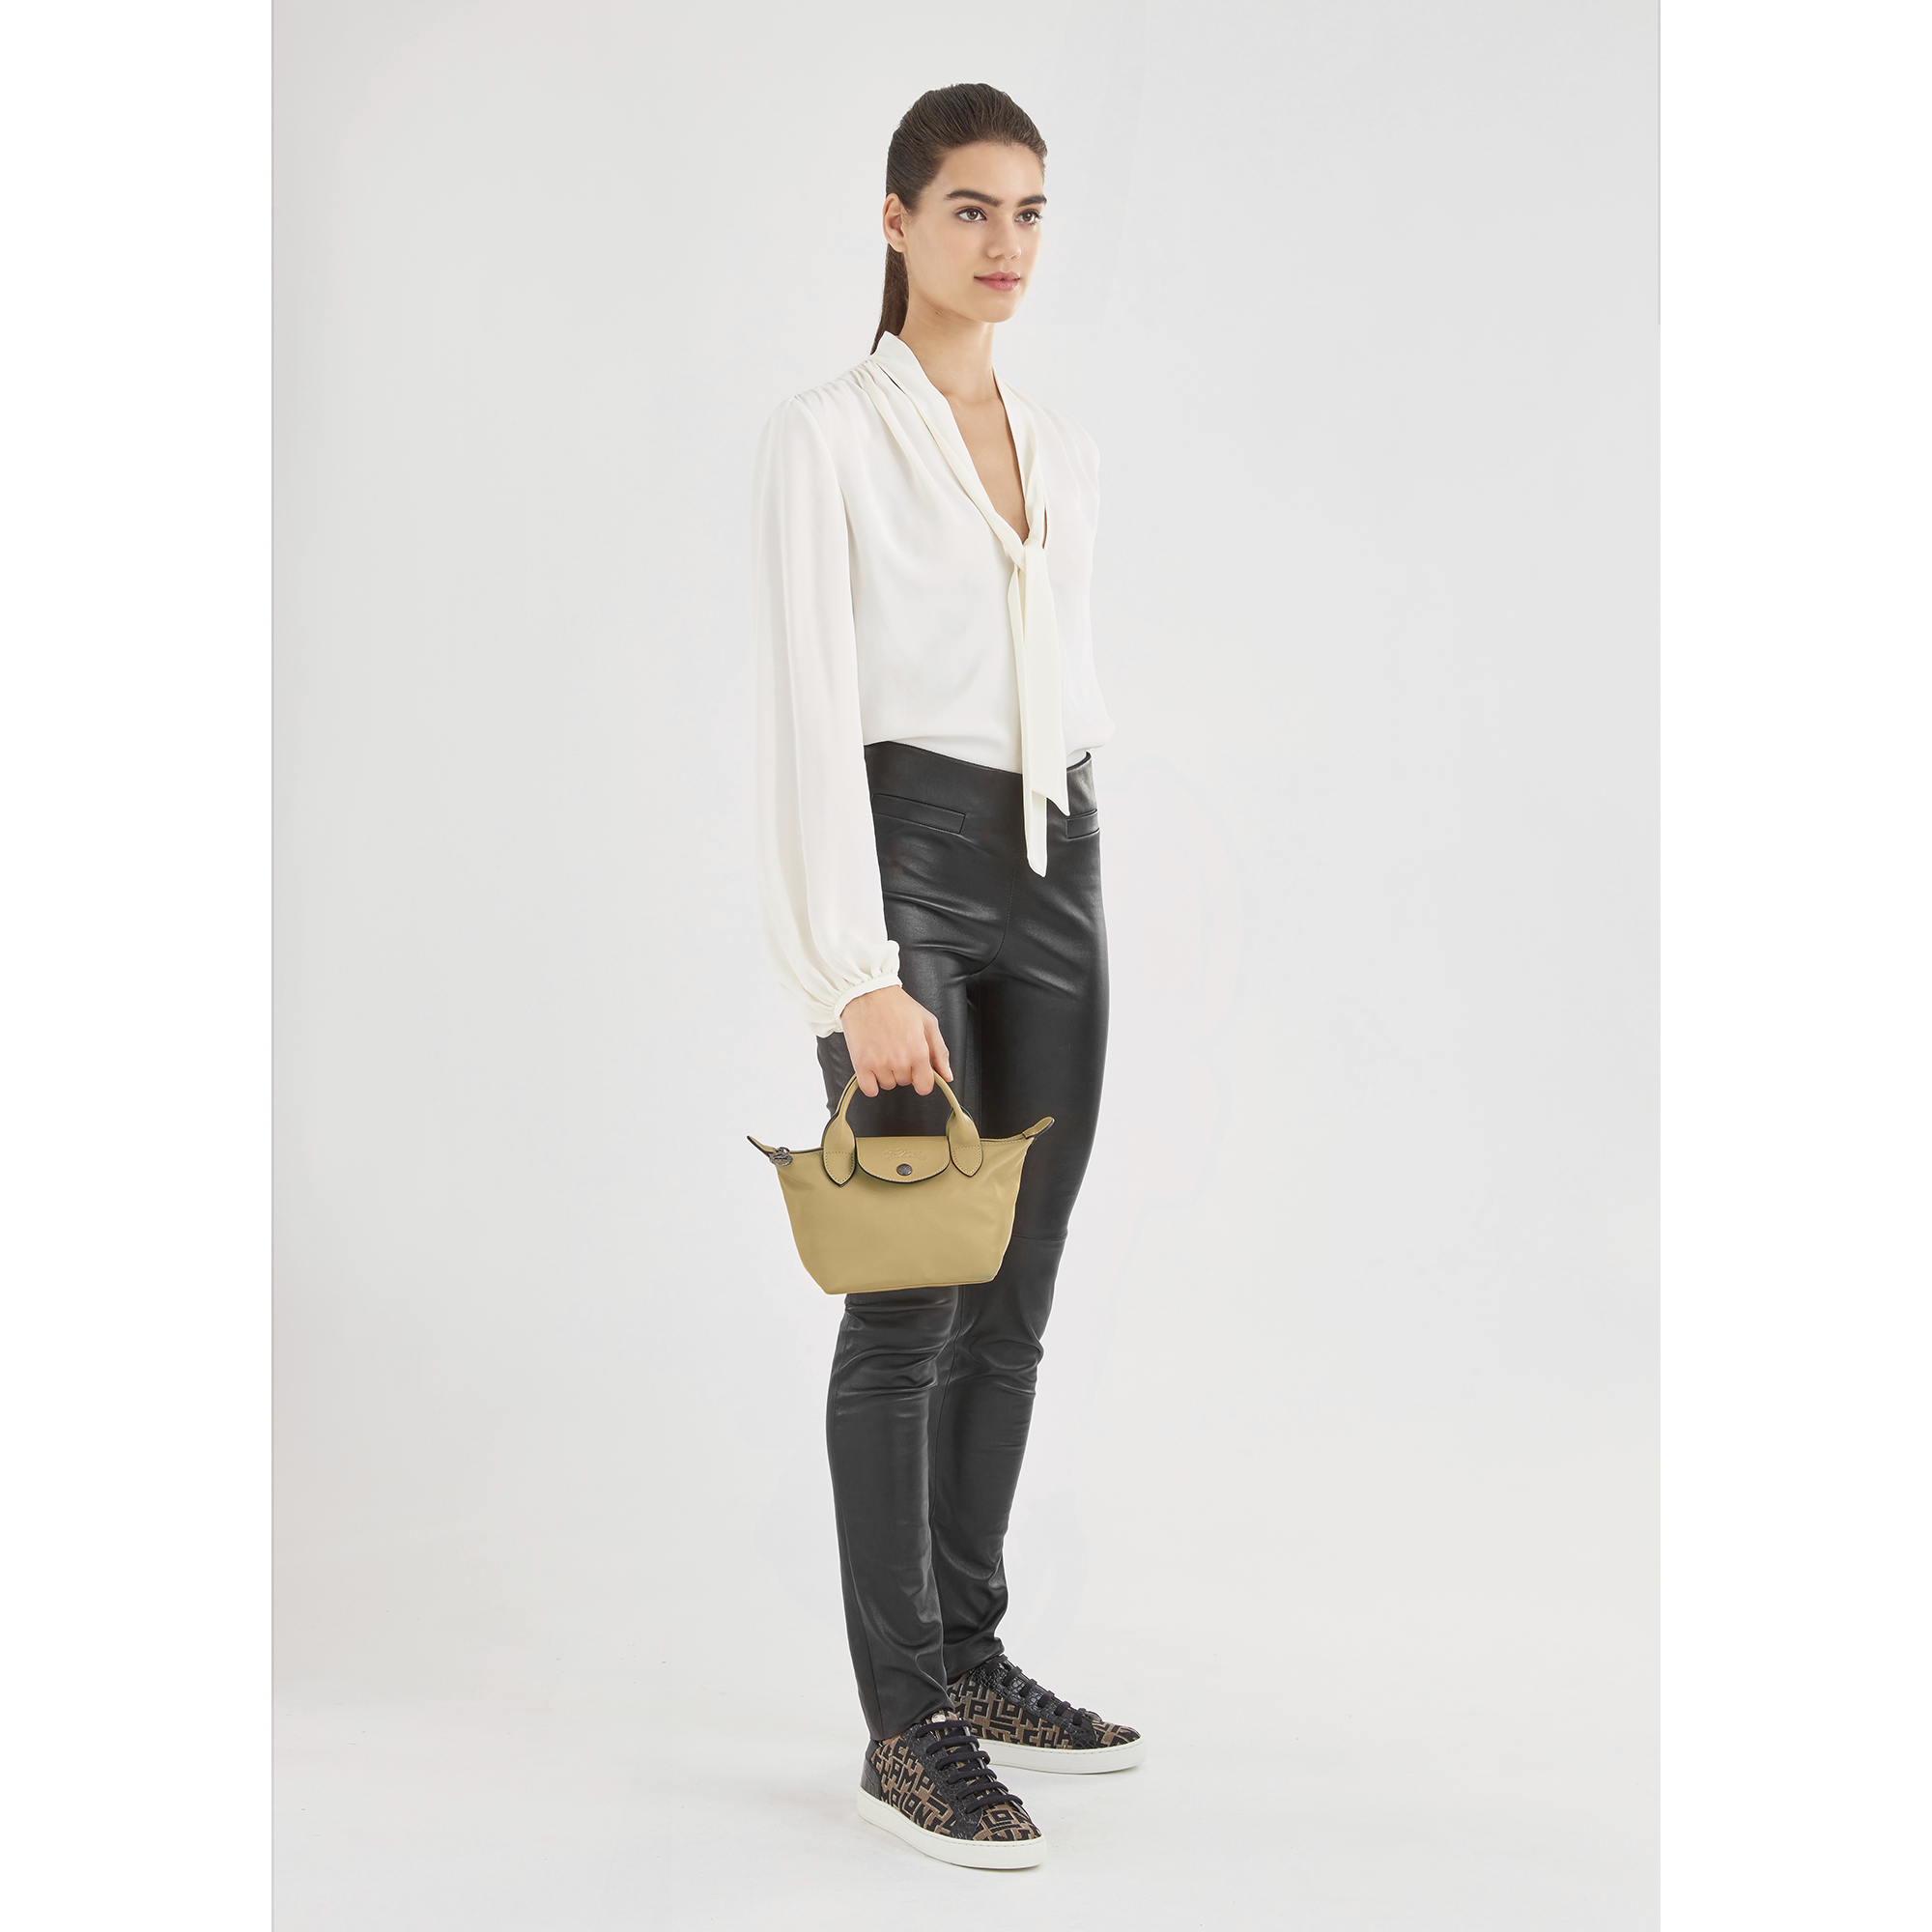 Longchamp Le Pliage Cuir XS Leather Top-Handle Bag